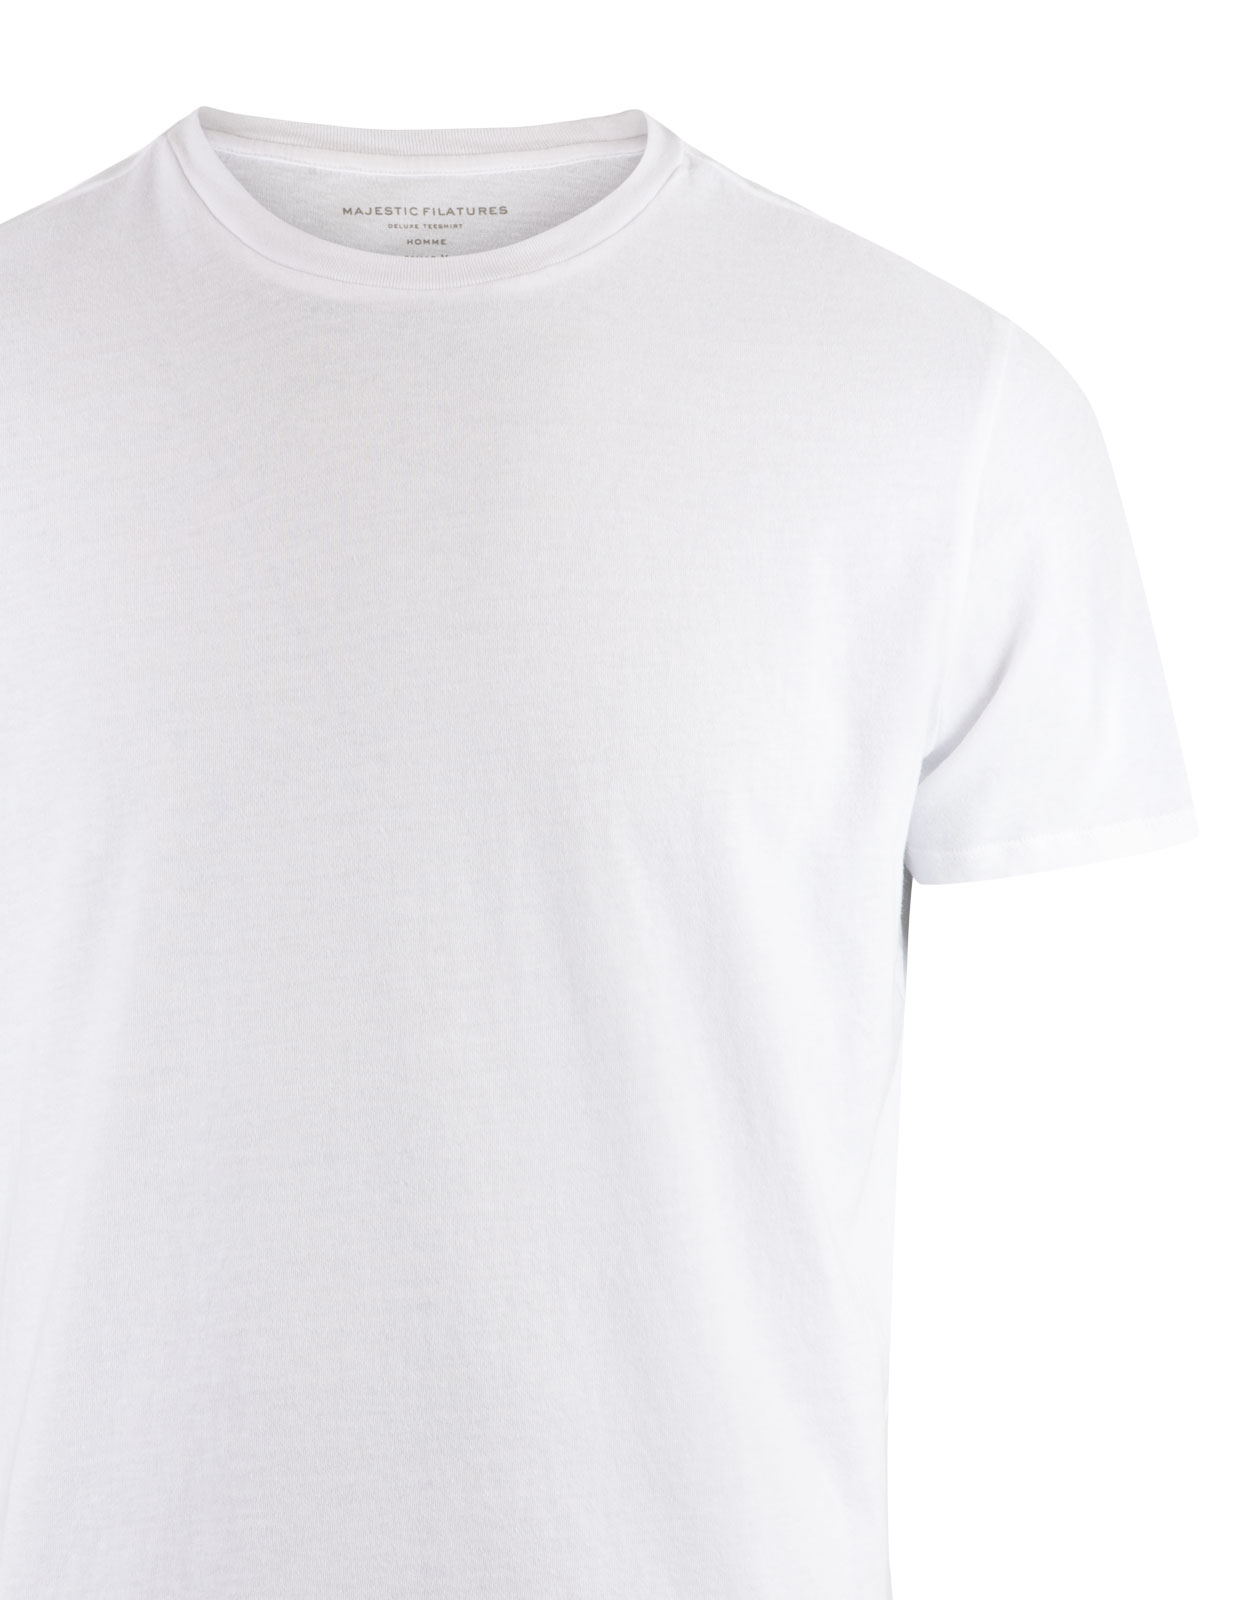 Silk Touch T-Shirt Blanc Stl XL